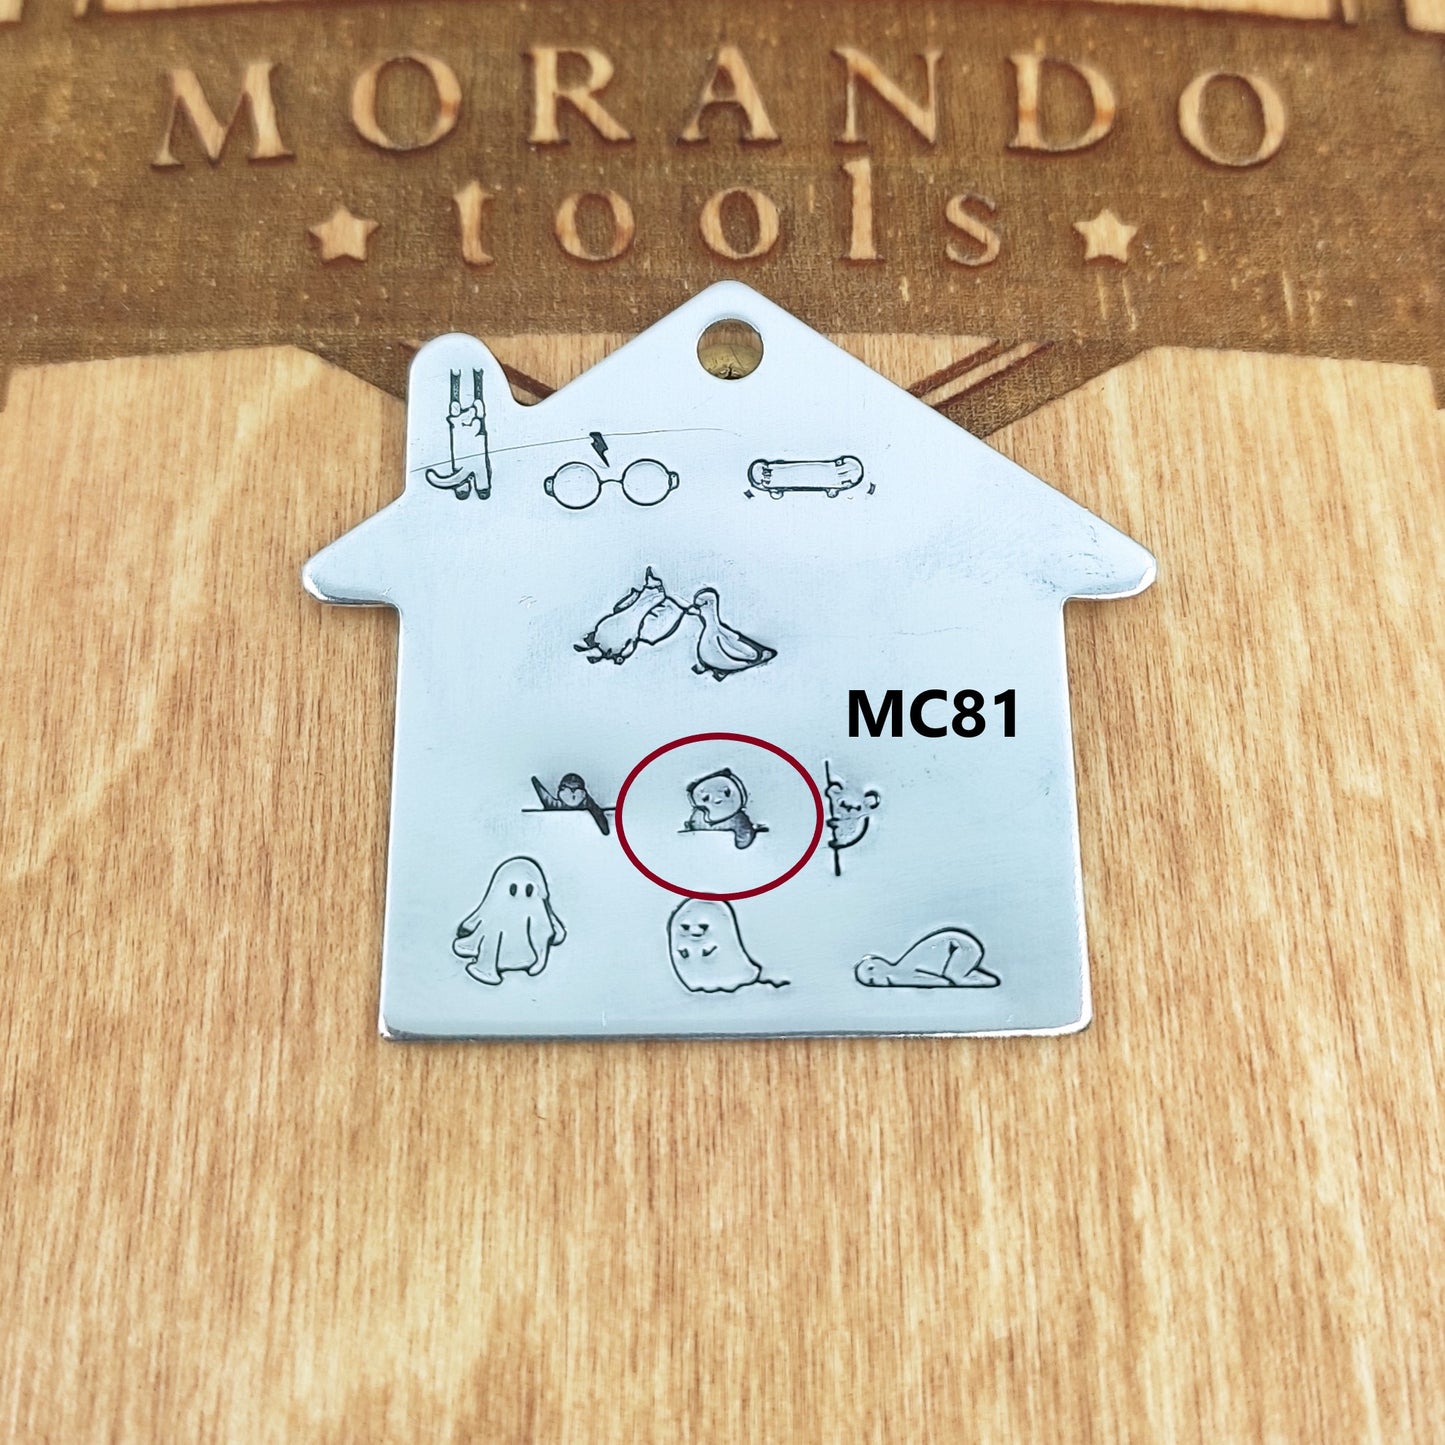 Micro Design Stamp MC81  4x3mm Cute Panda- Ultra Details